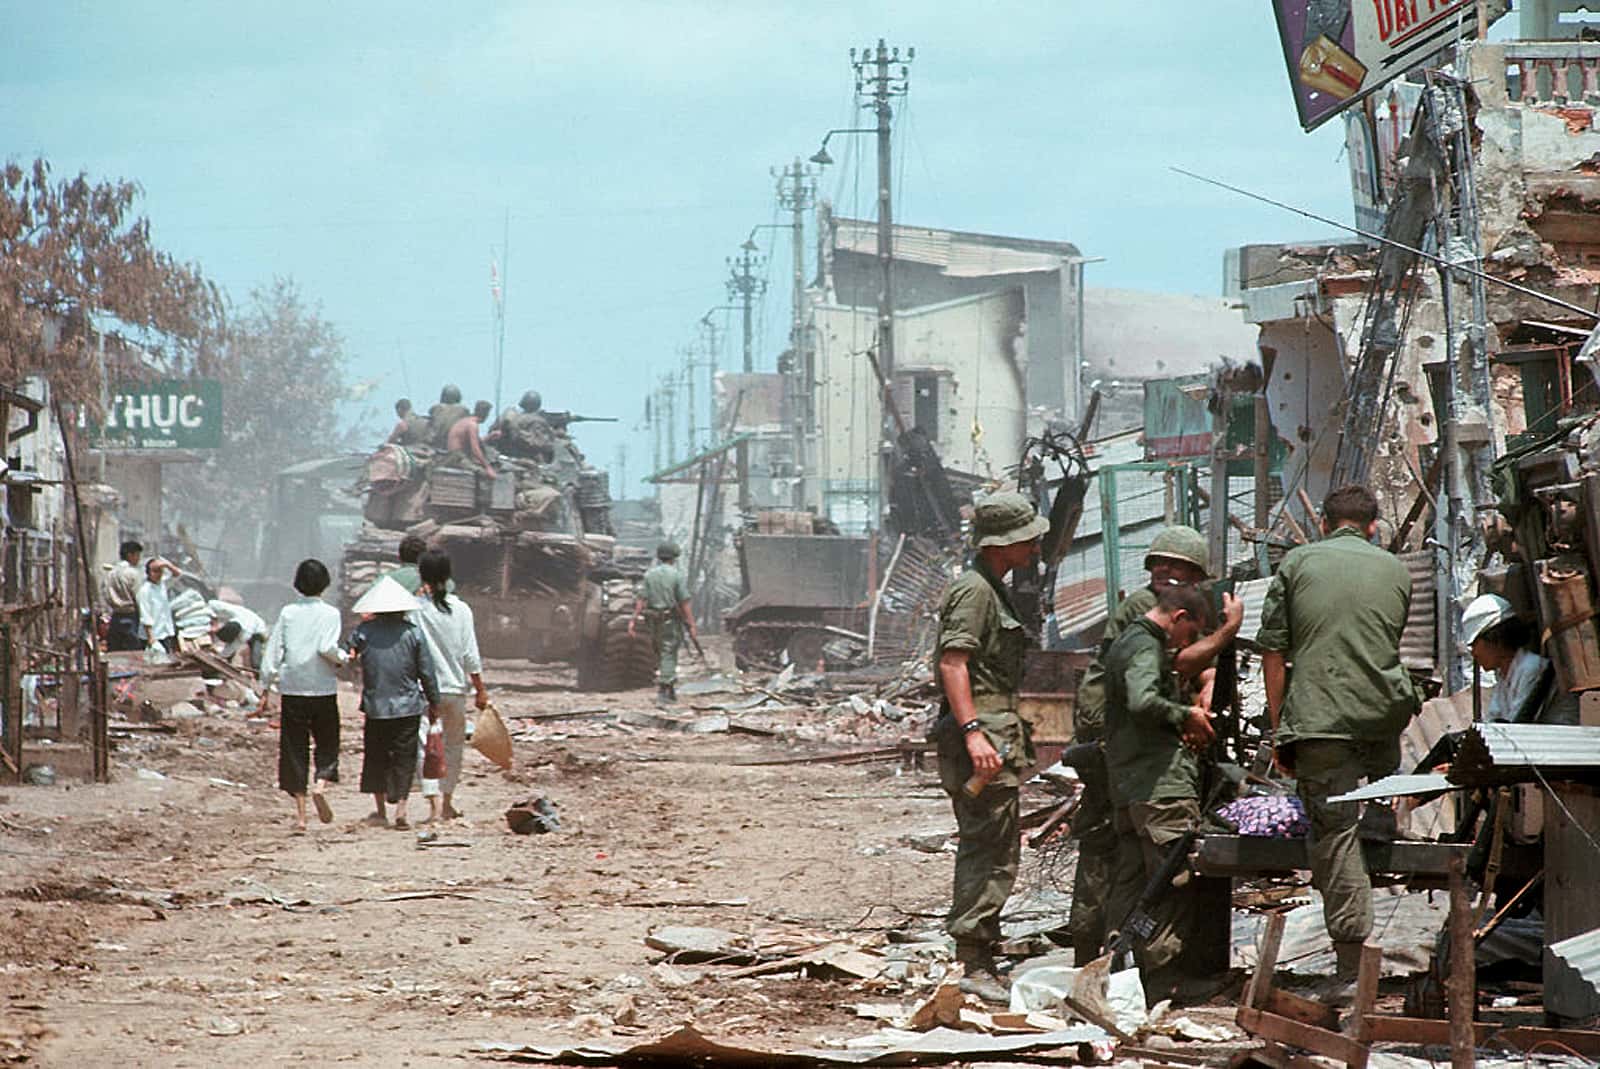 Vietnam War facts